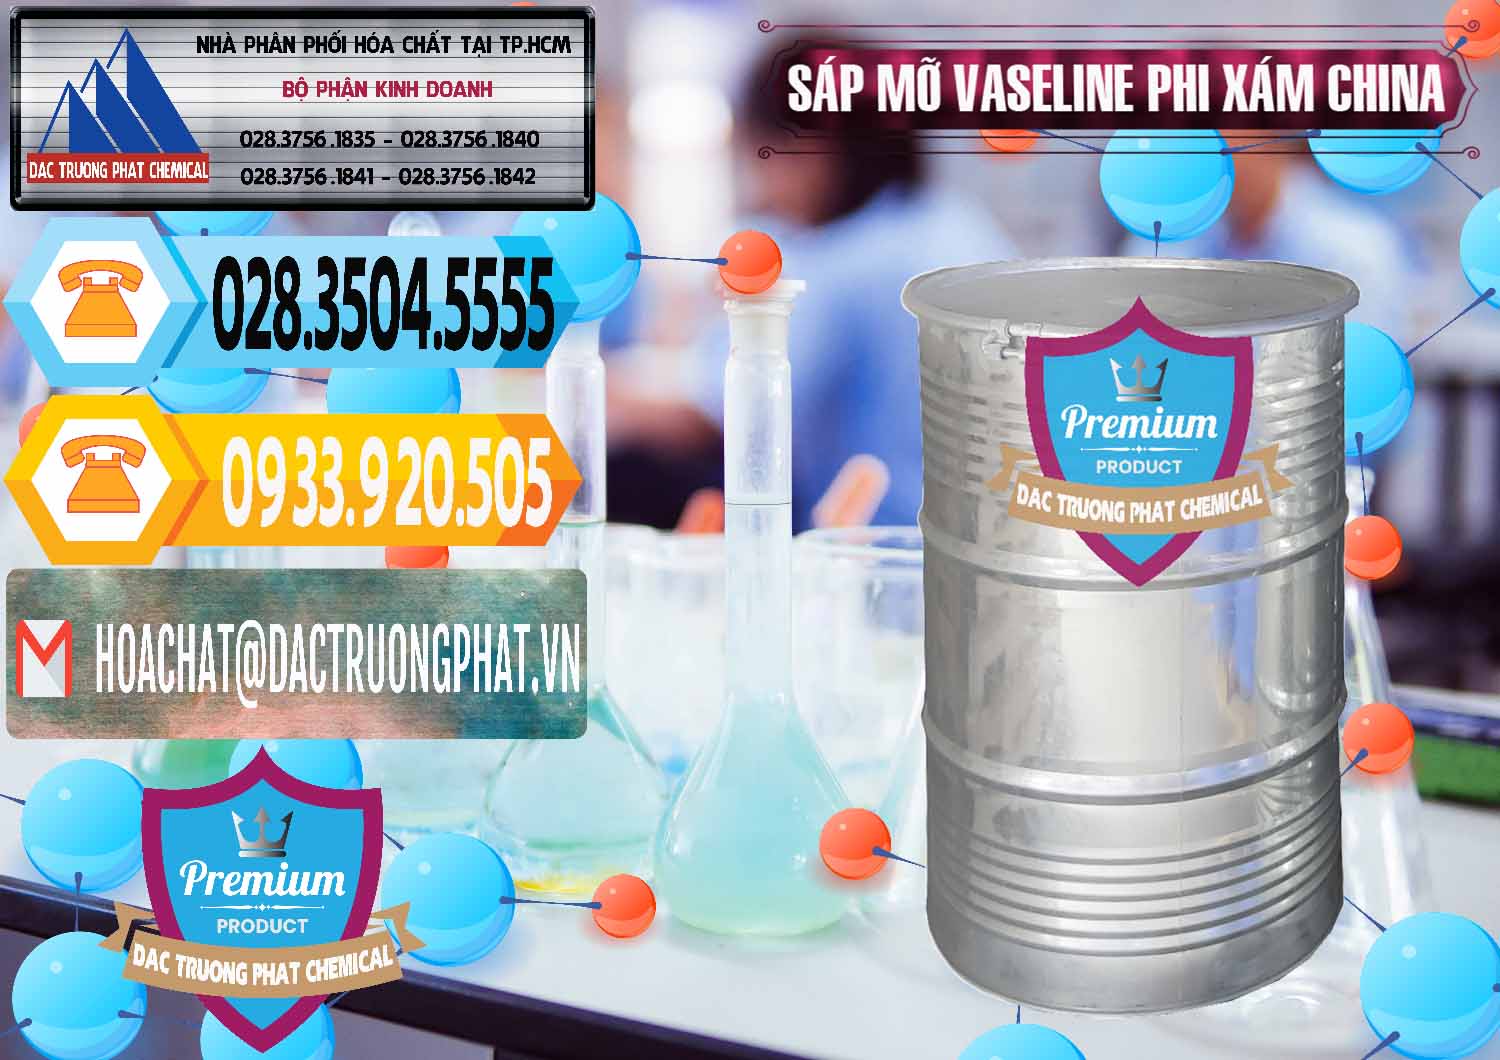 Cty chuyên phân phối ( bán ) Sáp Mỡ Vaseline Phi Xám Trung Quốc China - 0291 - Nhập khẩu & cung cấp hóa chất tại TP.HCM - hoachattayrua.net